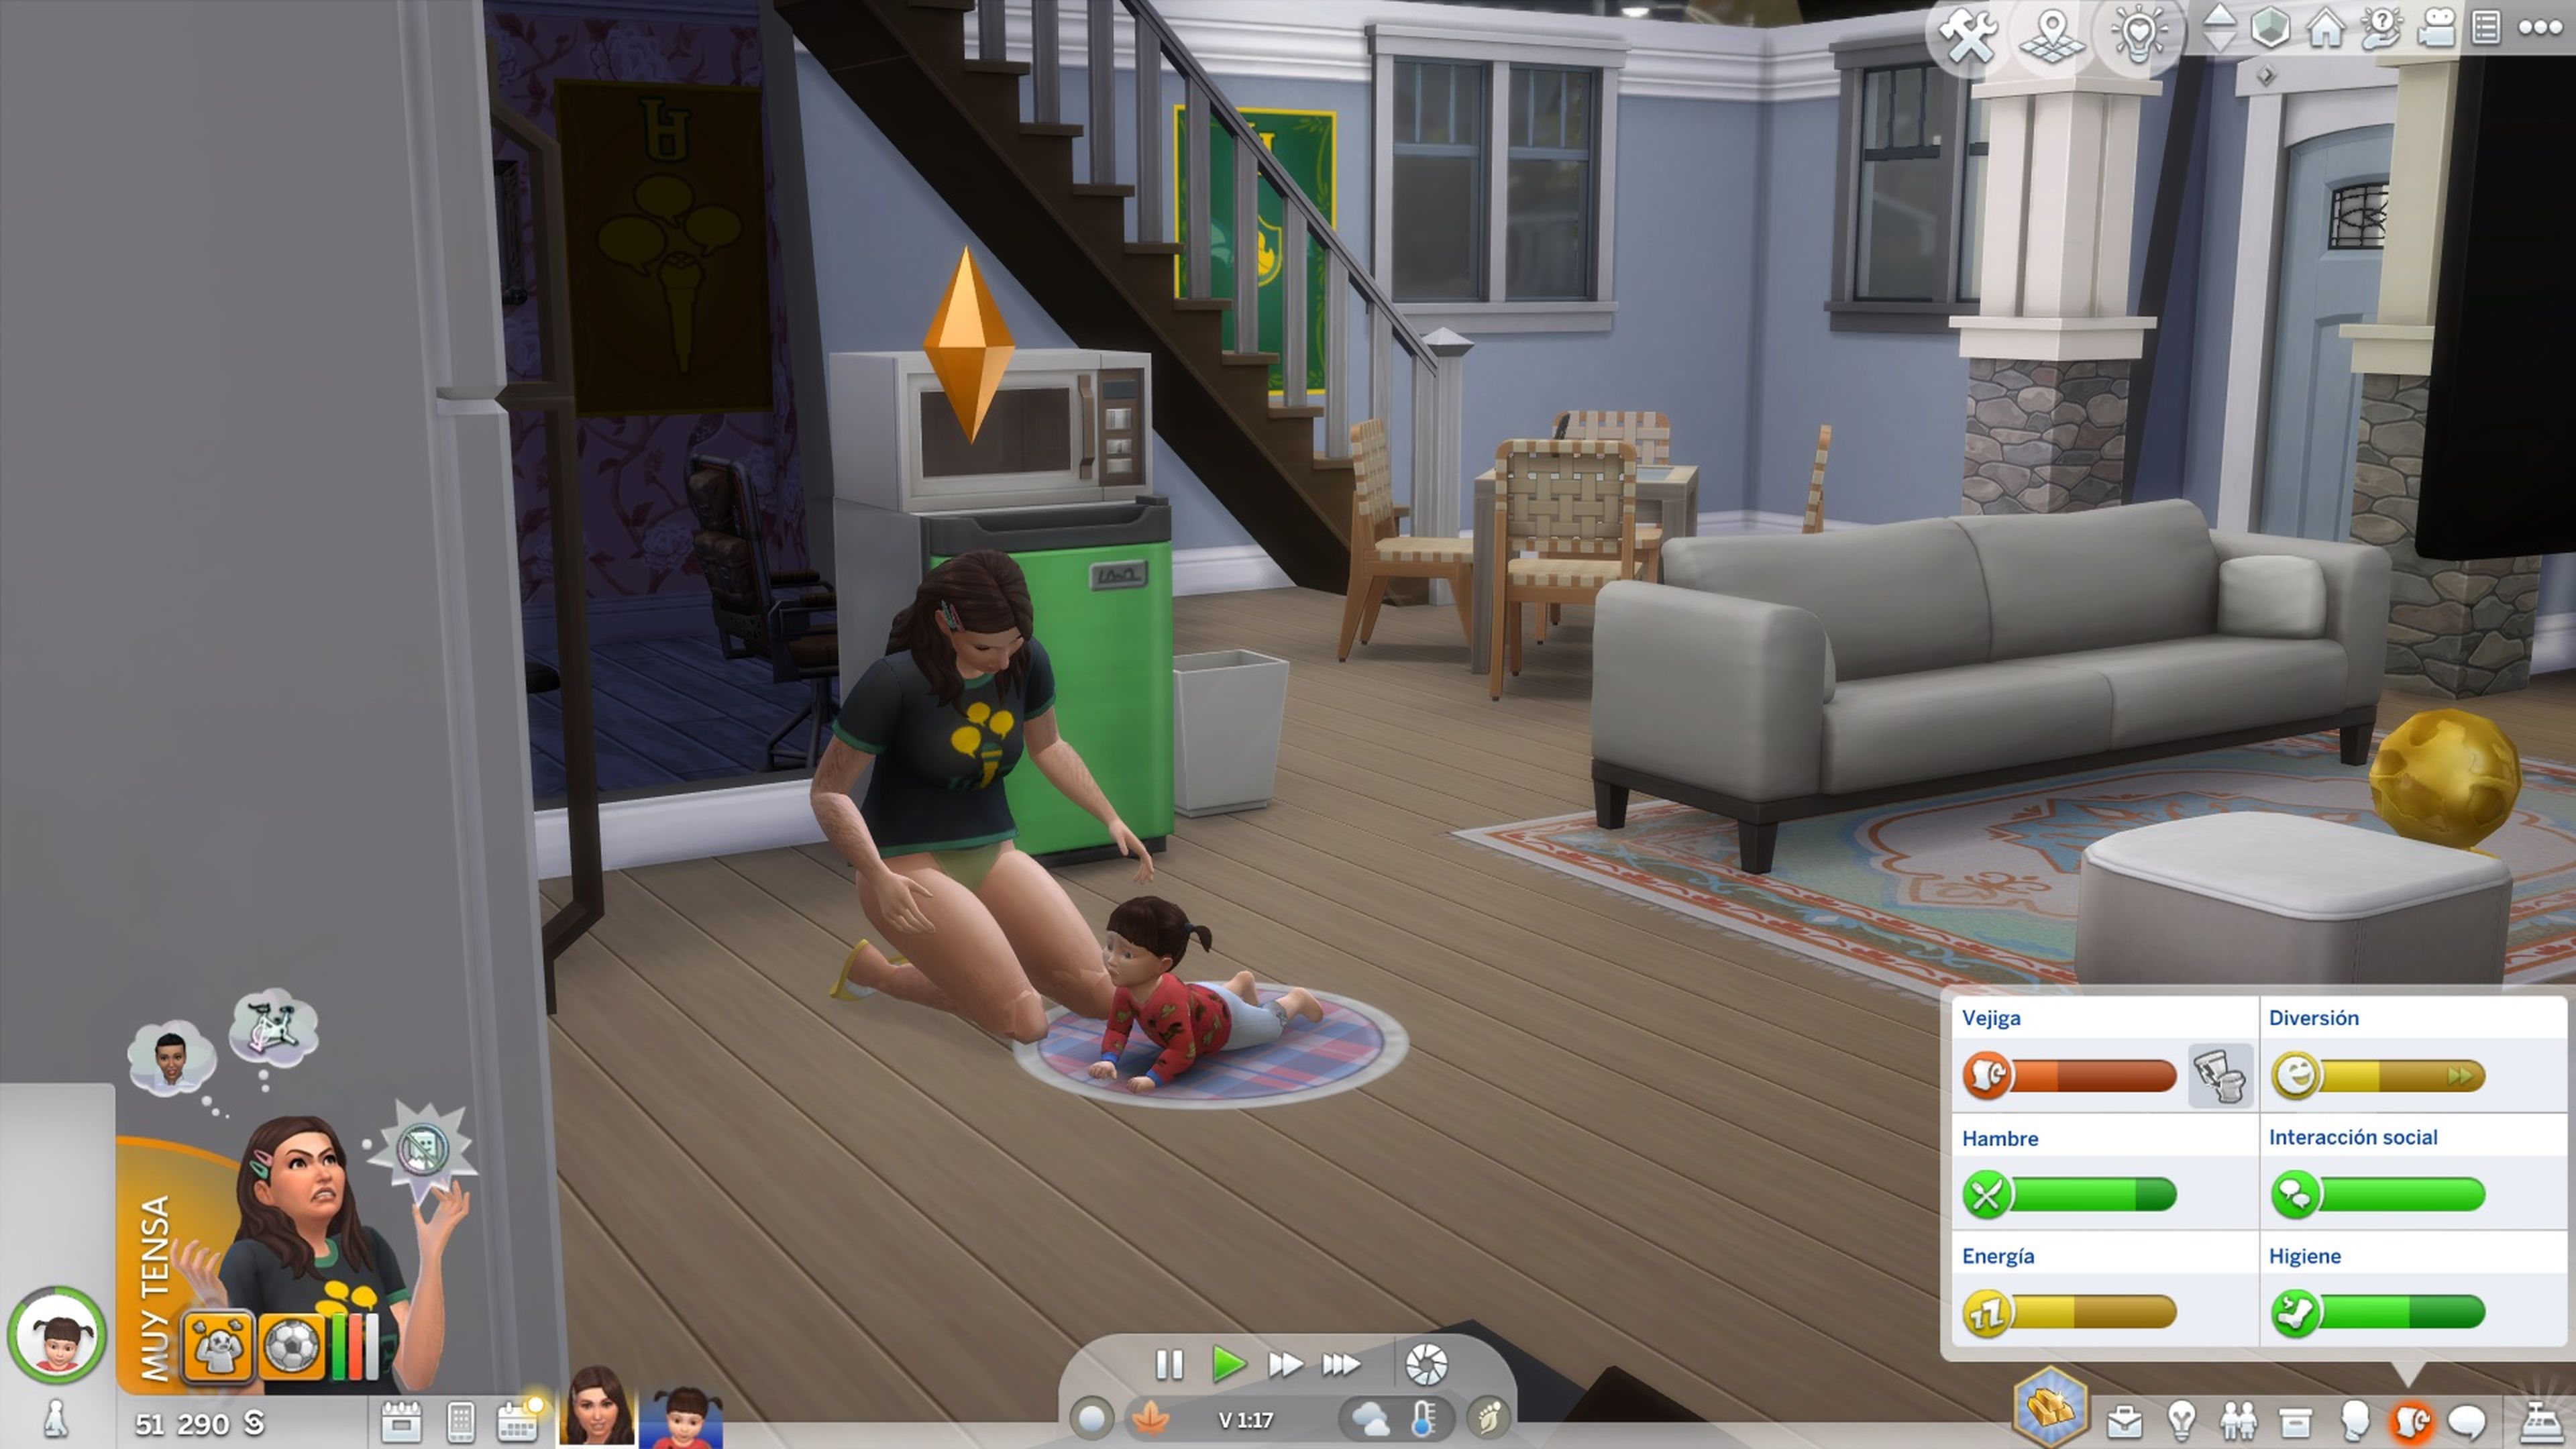 Captura de pantalla de Los Sims 4. Una madre juega con su hijo.